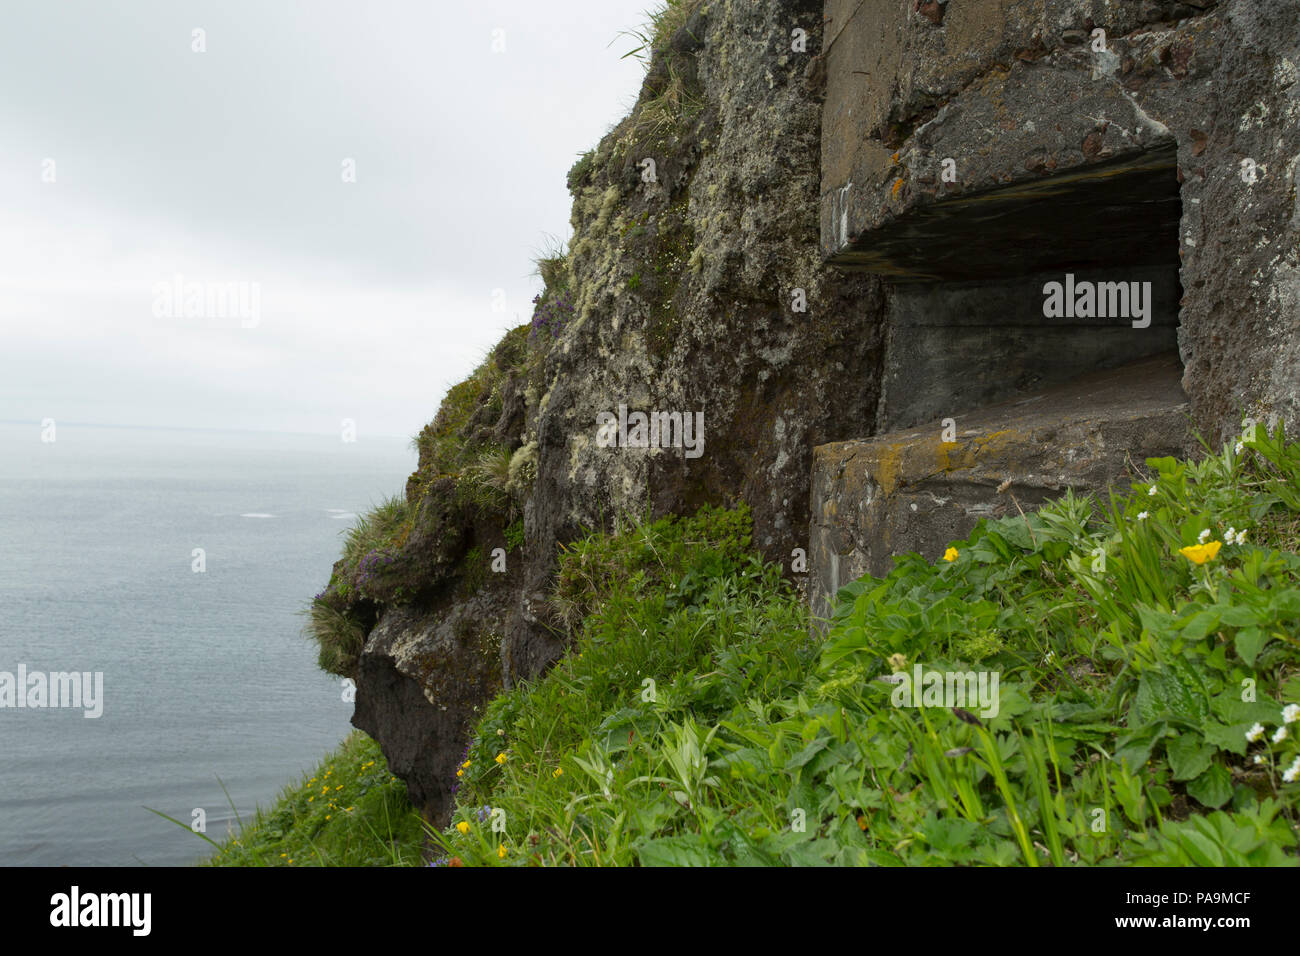 Los túneles de guerra y arma el cuartel en la isla Onekotan, las islas Kuriles Foto de stock